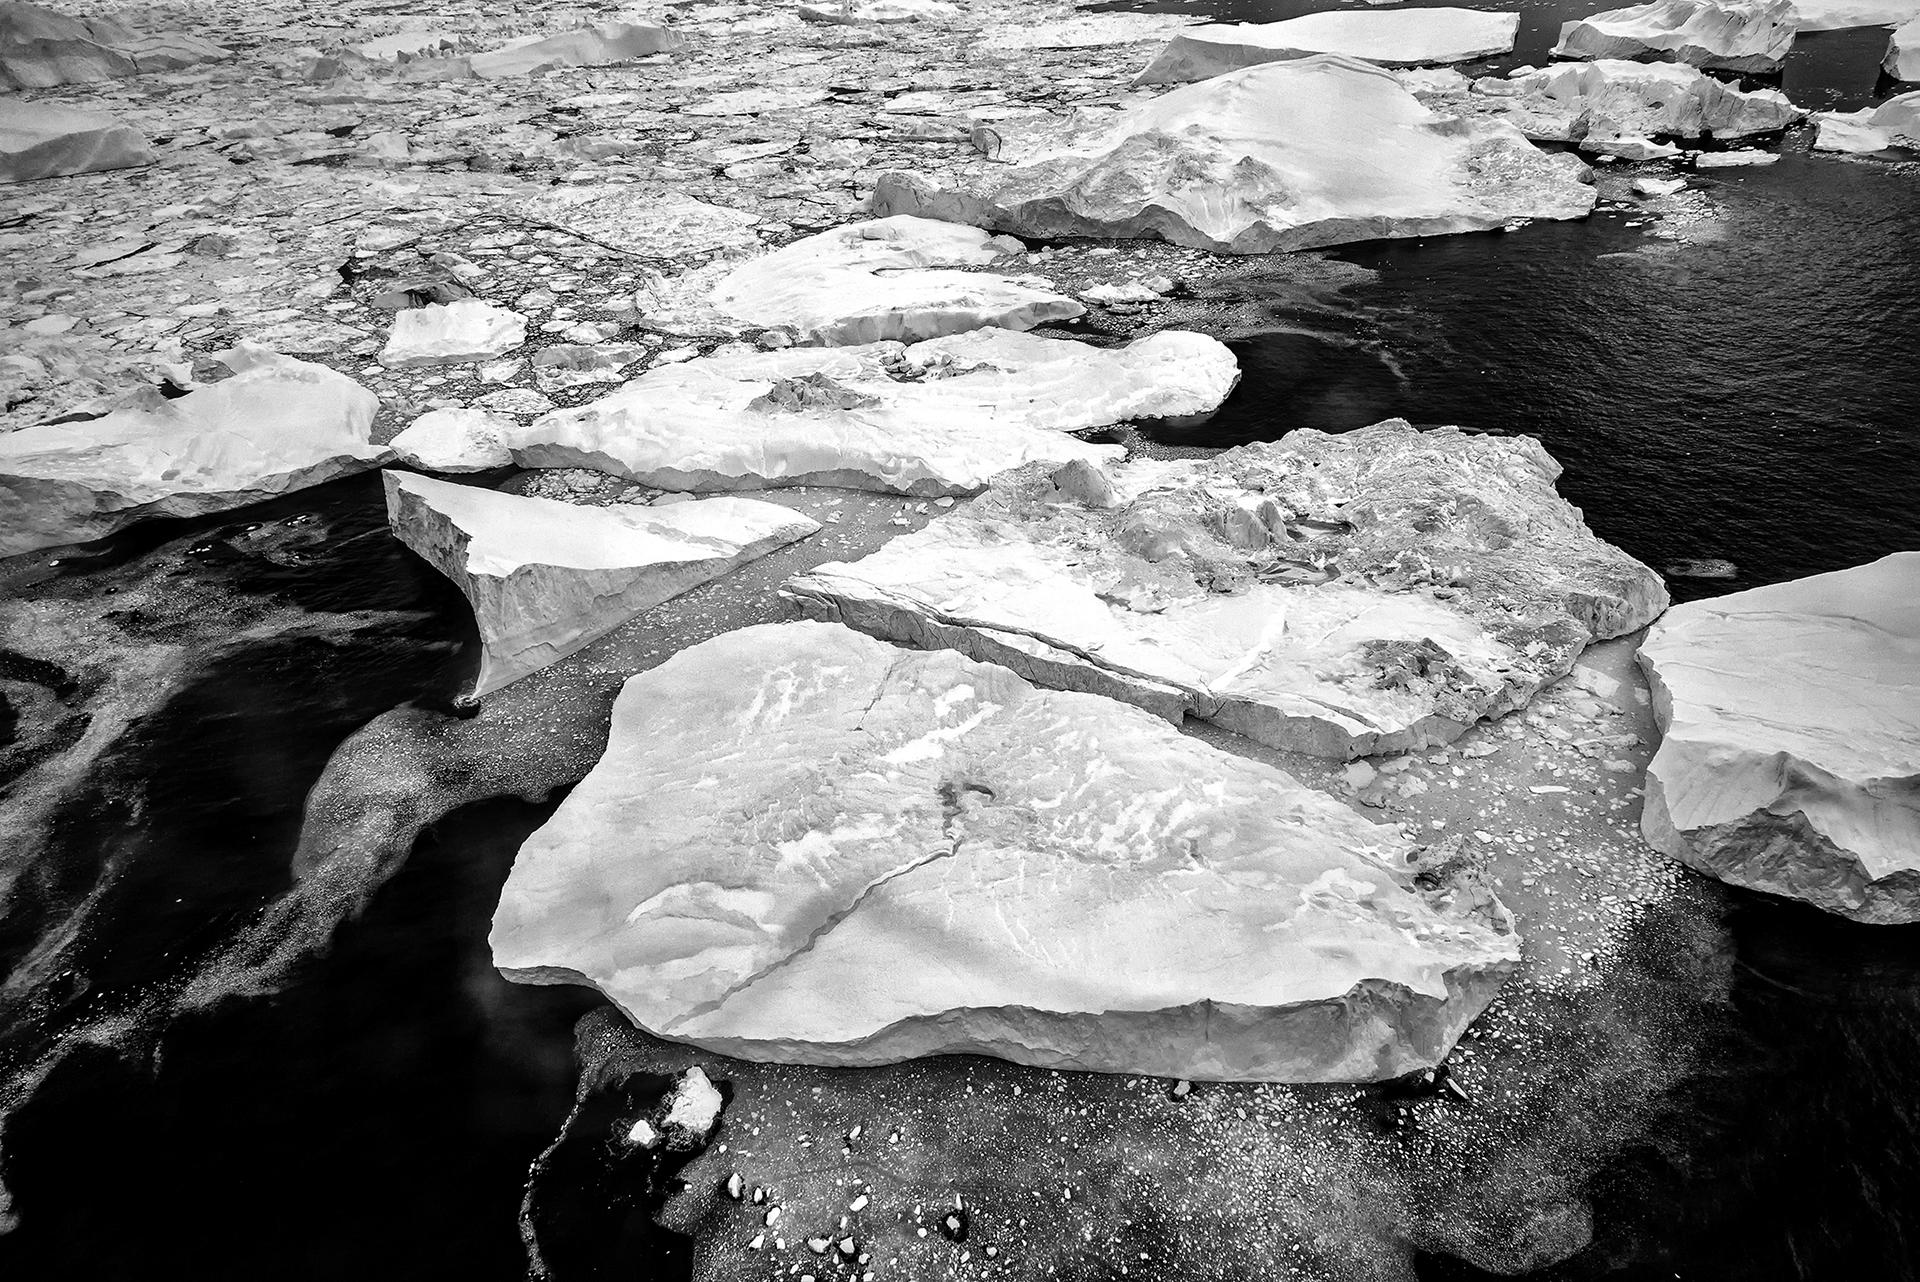 New York Photography Awards Winner - Over the iceberg (black and white)